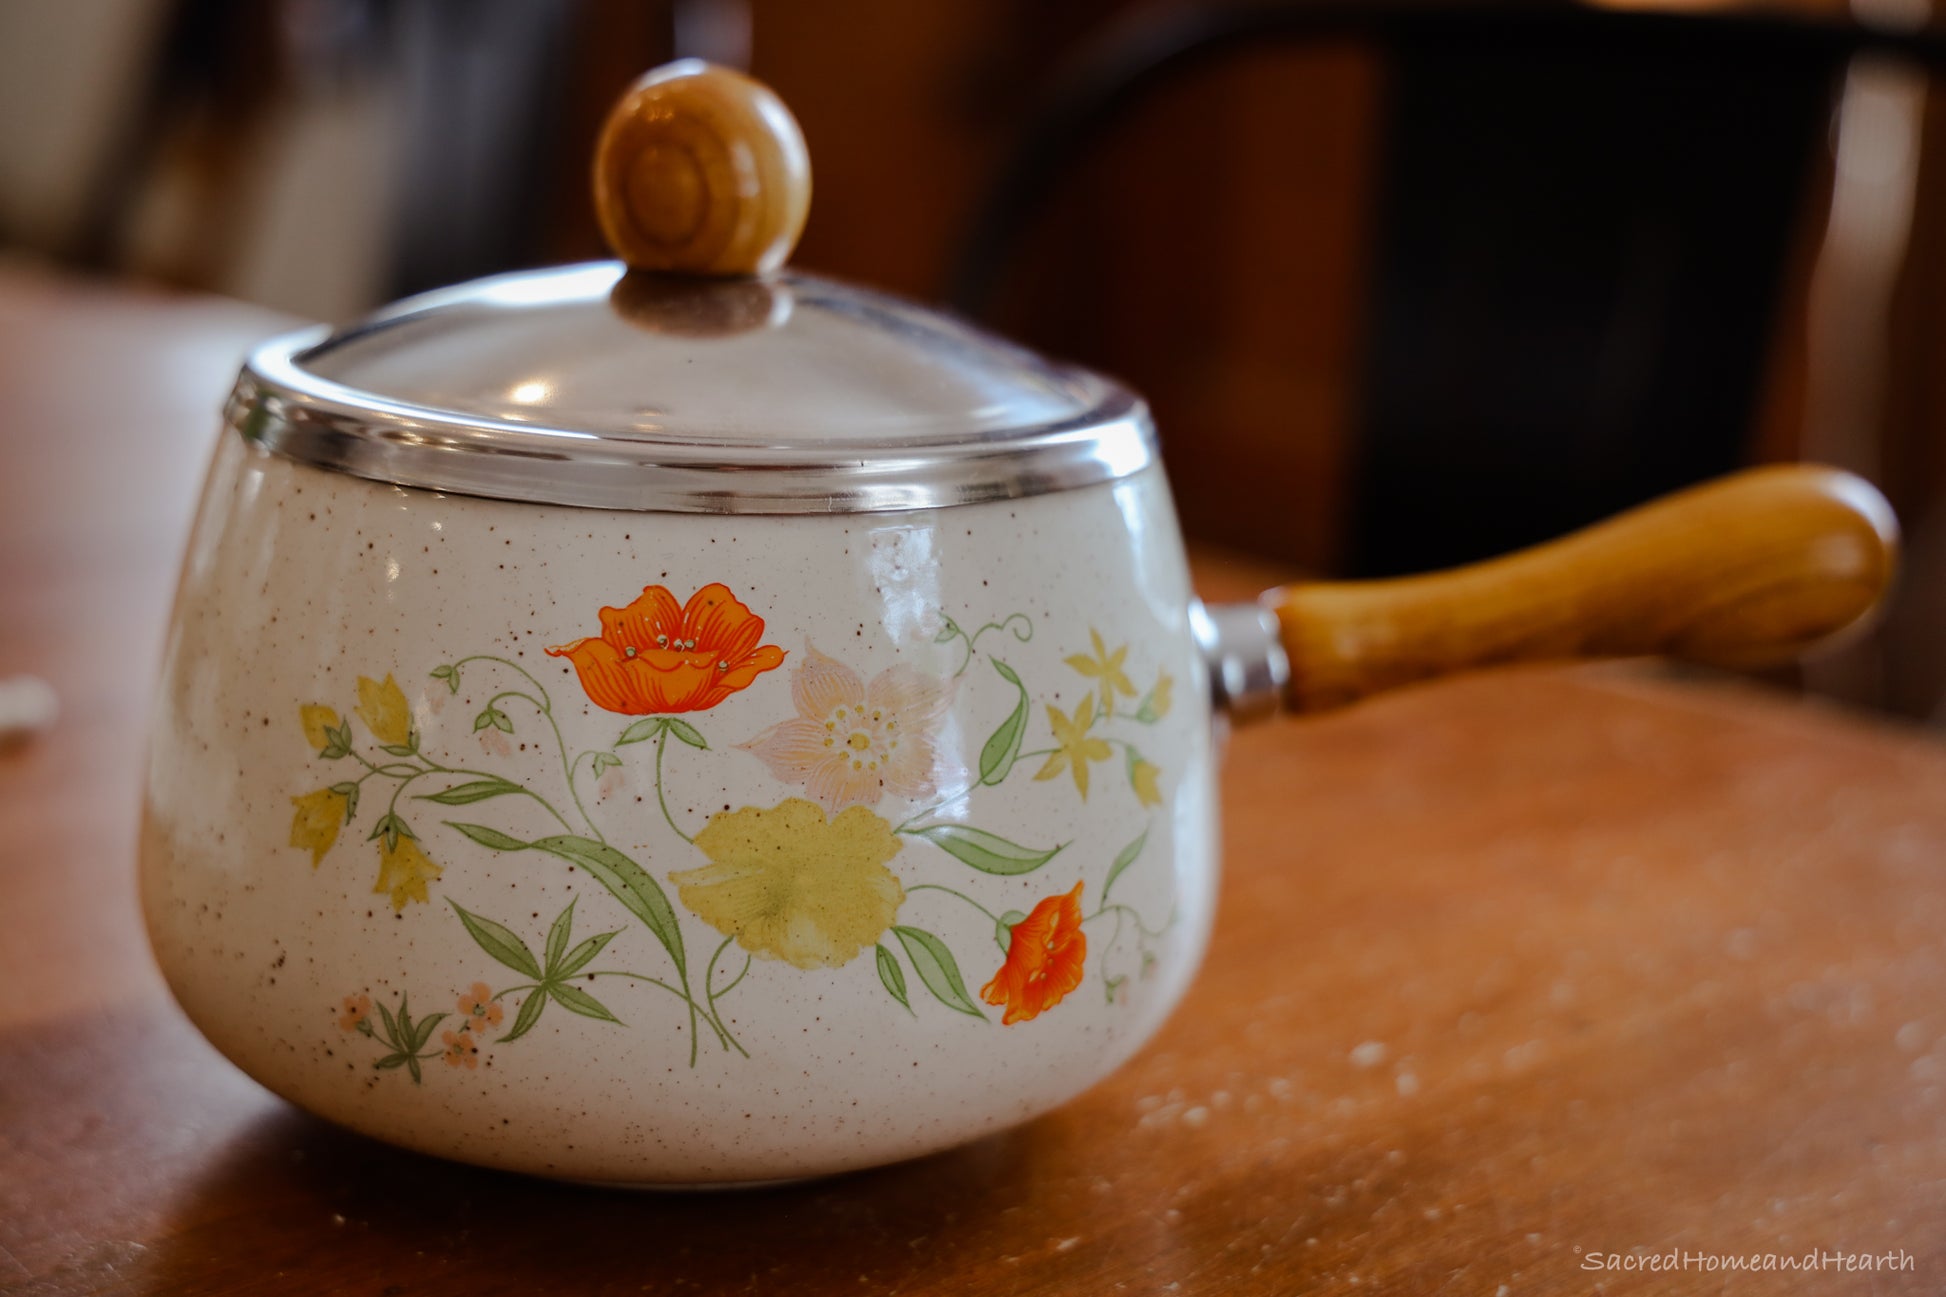 Vintage Enamel Pot – Sacredhomeandhearth